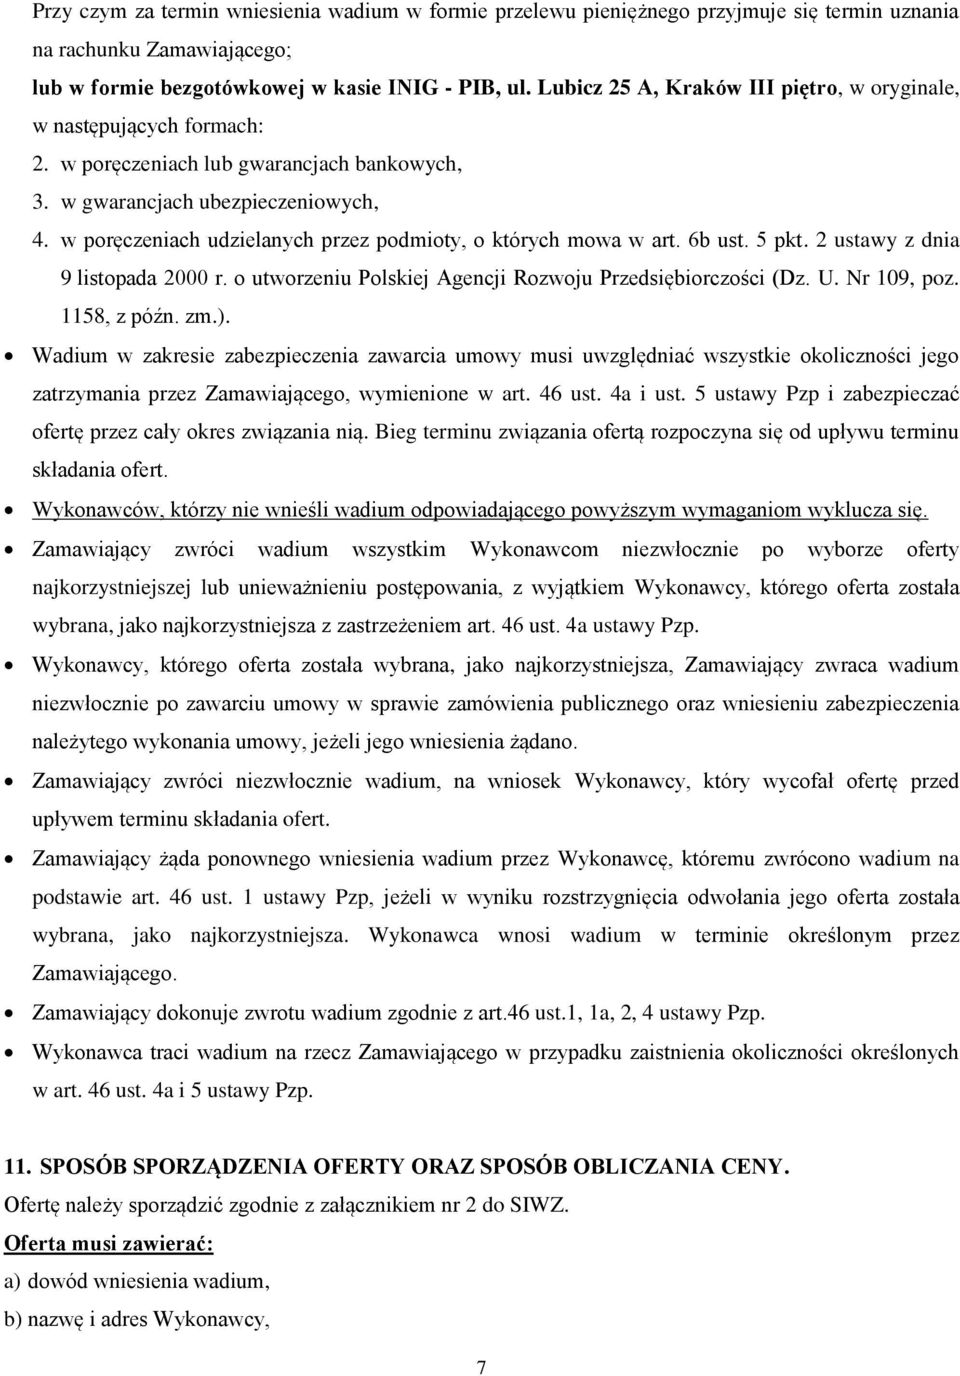 w poręczeniach udzielanych przez podmioty, o których mowa w art. 6b ust. 5 pkt. 2 ustawy z dnia 9 listopada 2000 r. o utworzeniu Polskiej Agencji Rozwoju Przedsiębiorczości (Dz. U. Nr 109, poz.